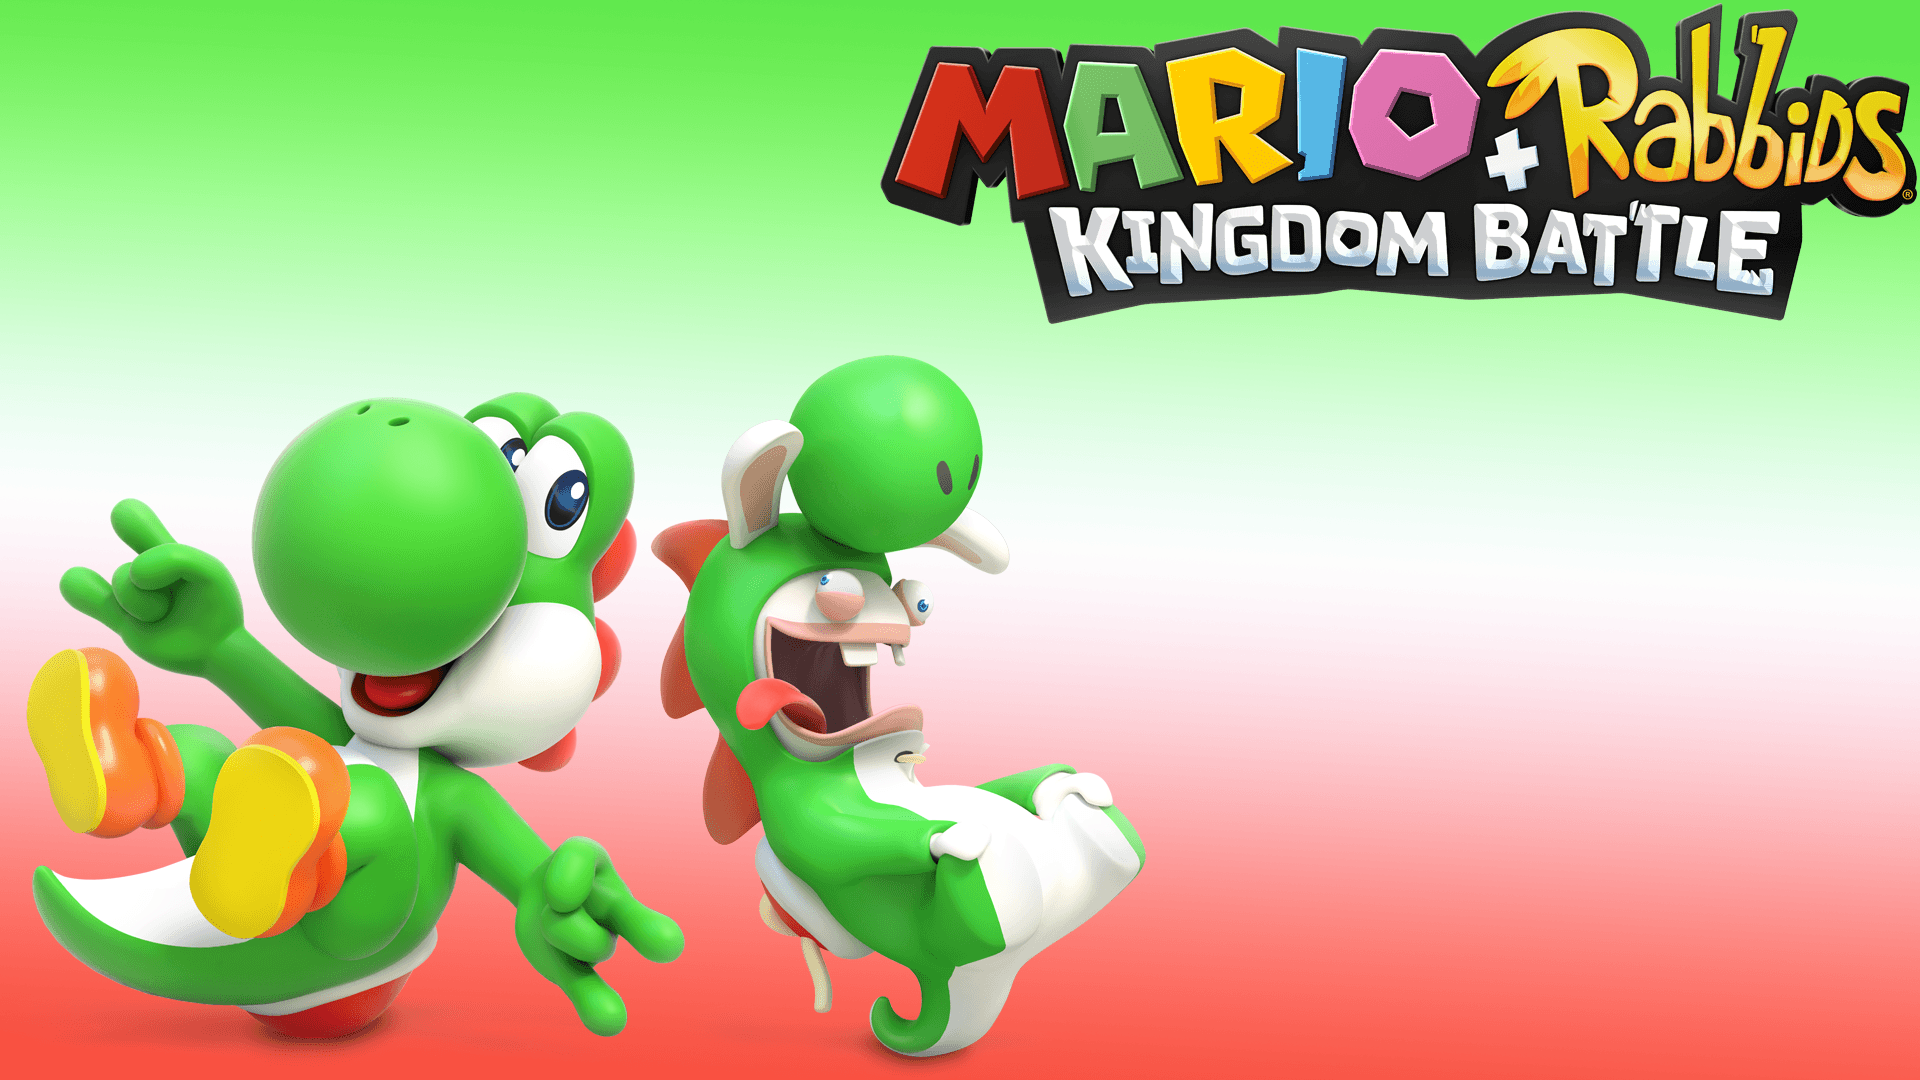 Mario + Rabbids Kingdom Battle Yoshi & Rabbid Yoshi